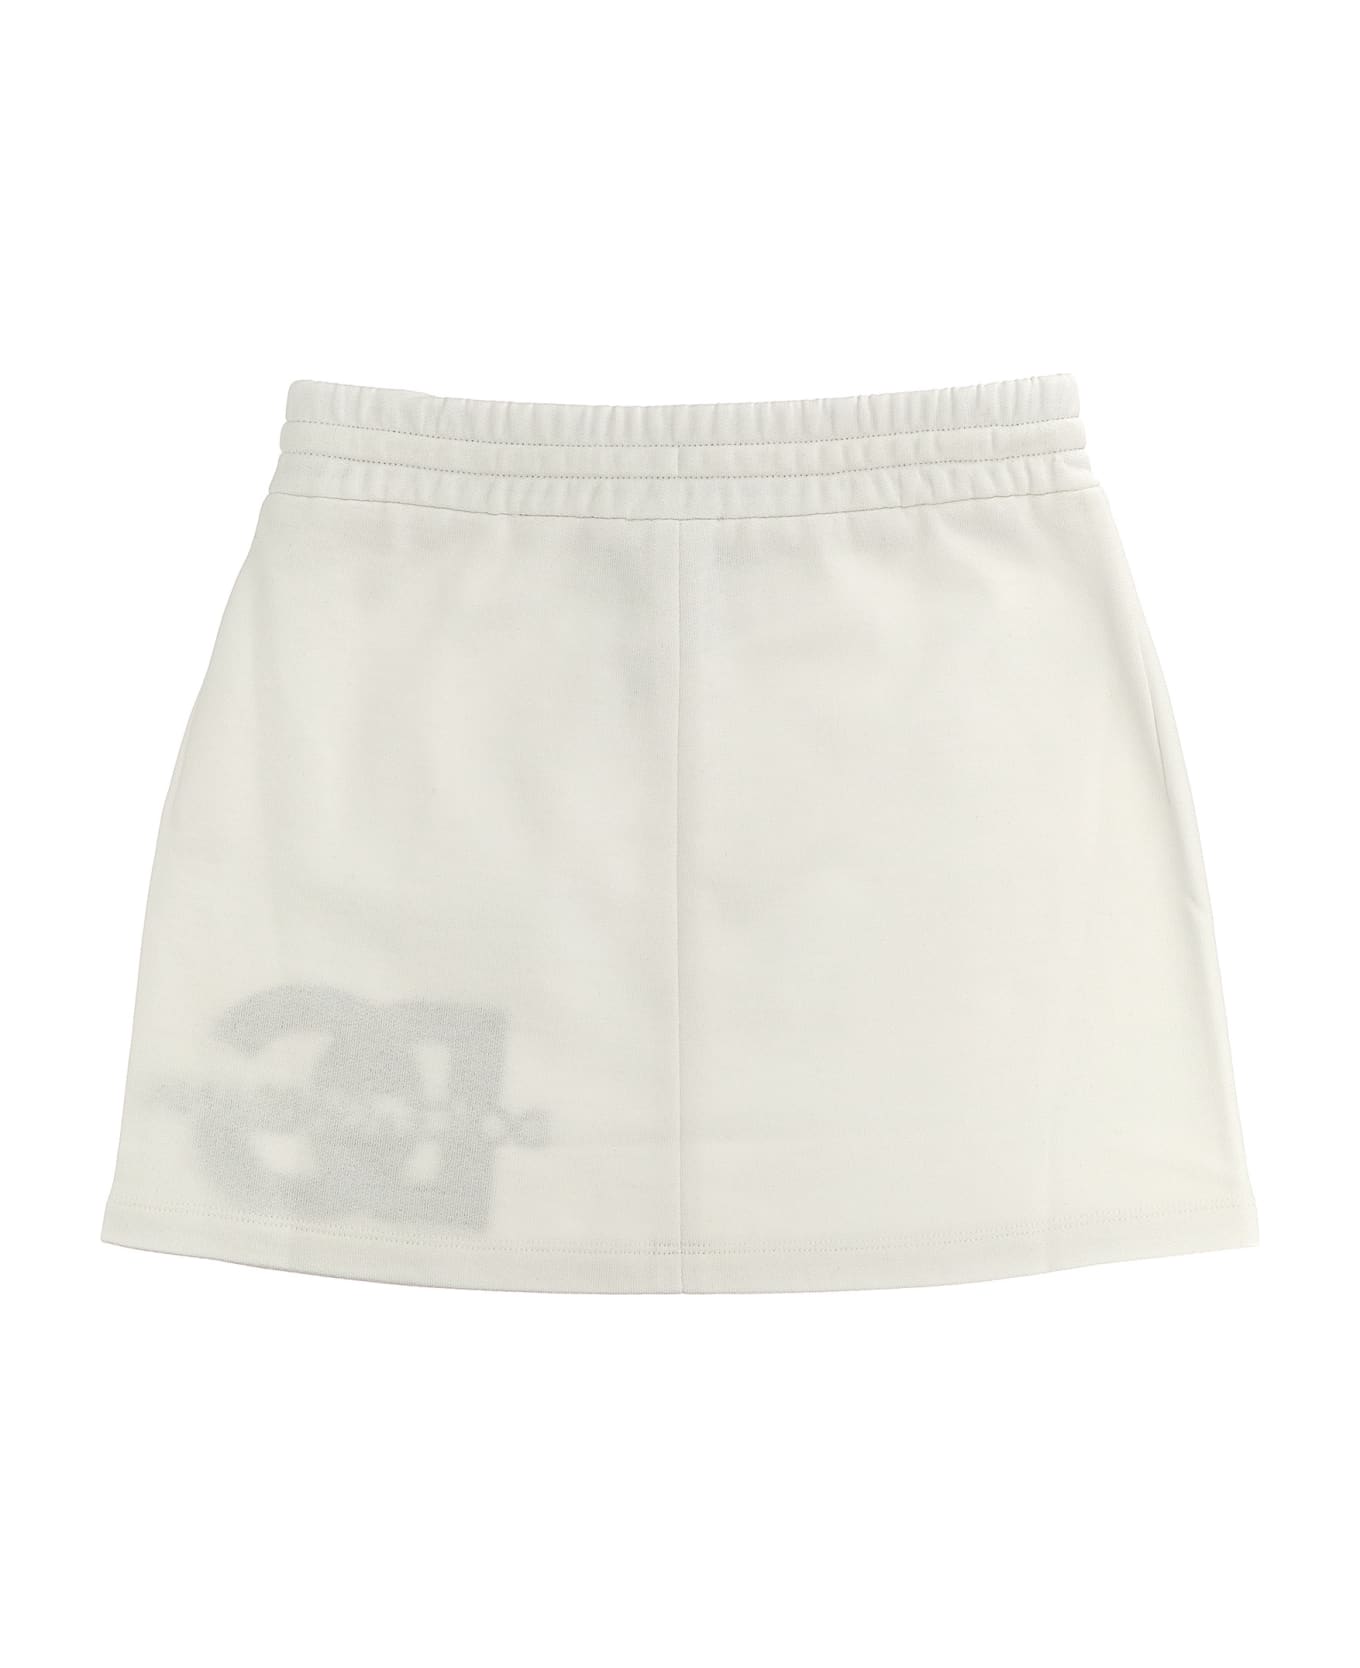 Dolce & Gabbana Mini Skirt - White